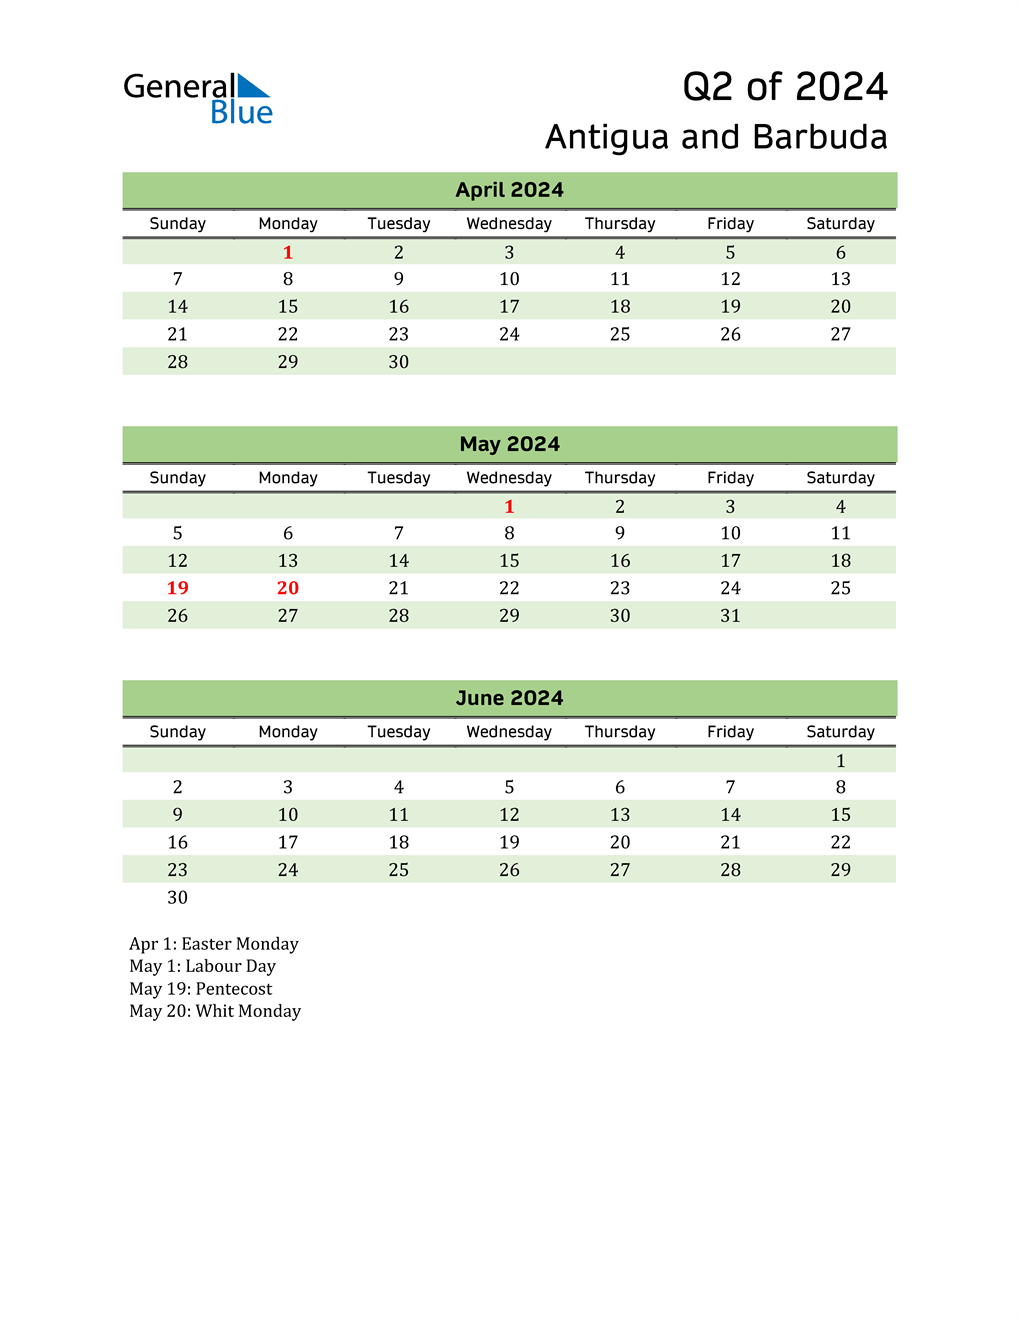  Quarterly Calendar 2024 with Antigua and Barbuda Holidays 